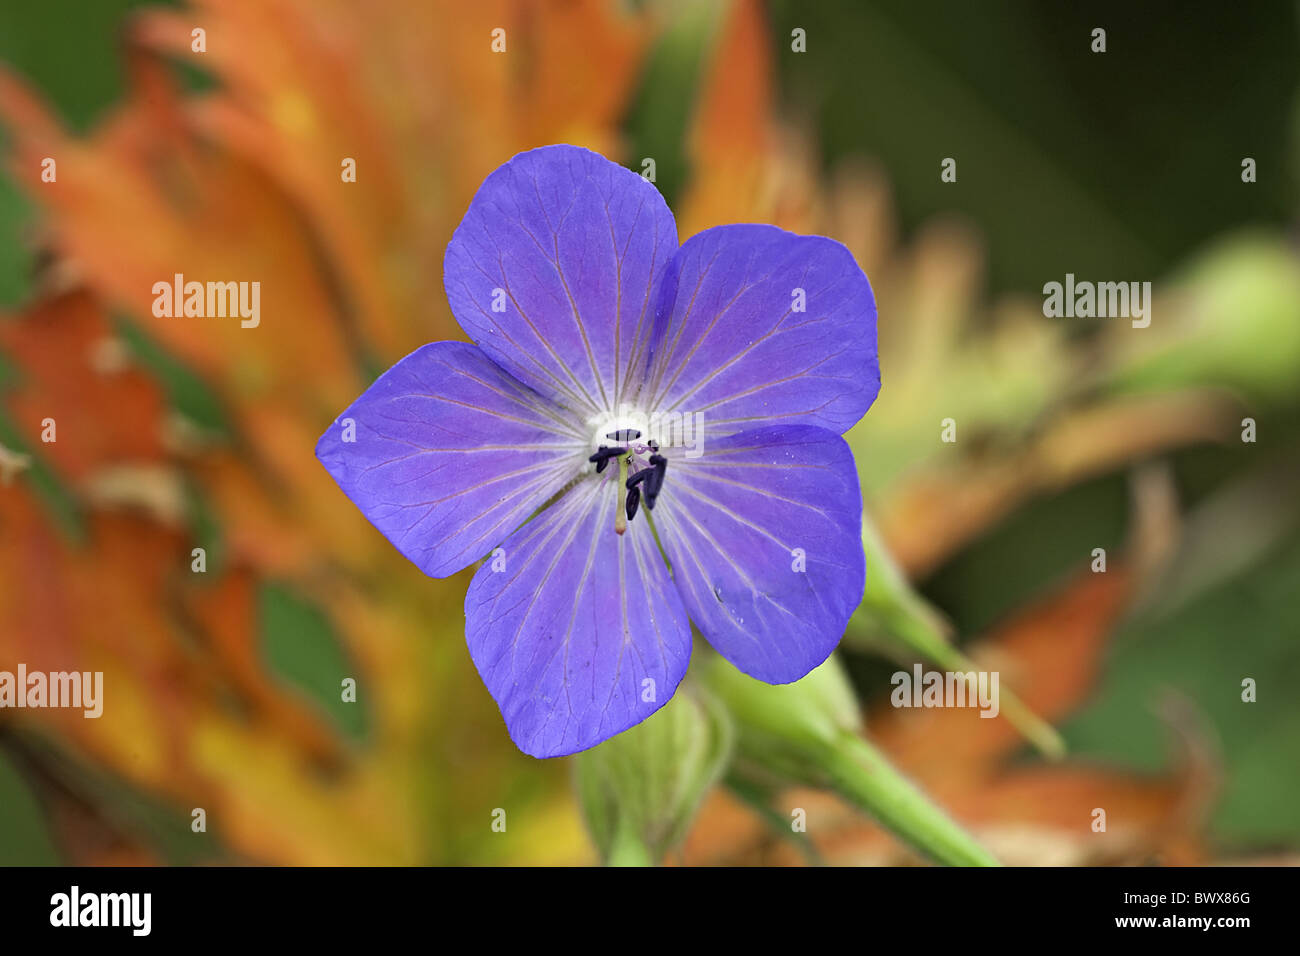 Alamy Stigma Geranium Stockfotografie Blüten Farbe Pratense Blume Staubblätter Wiesen Storchschnabel blaue Blüte Storchschnabel - Blume Pflanze Blumen Wiese